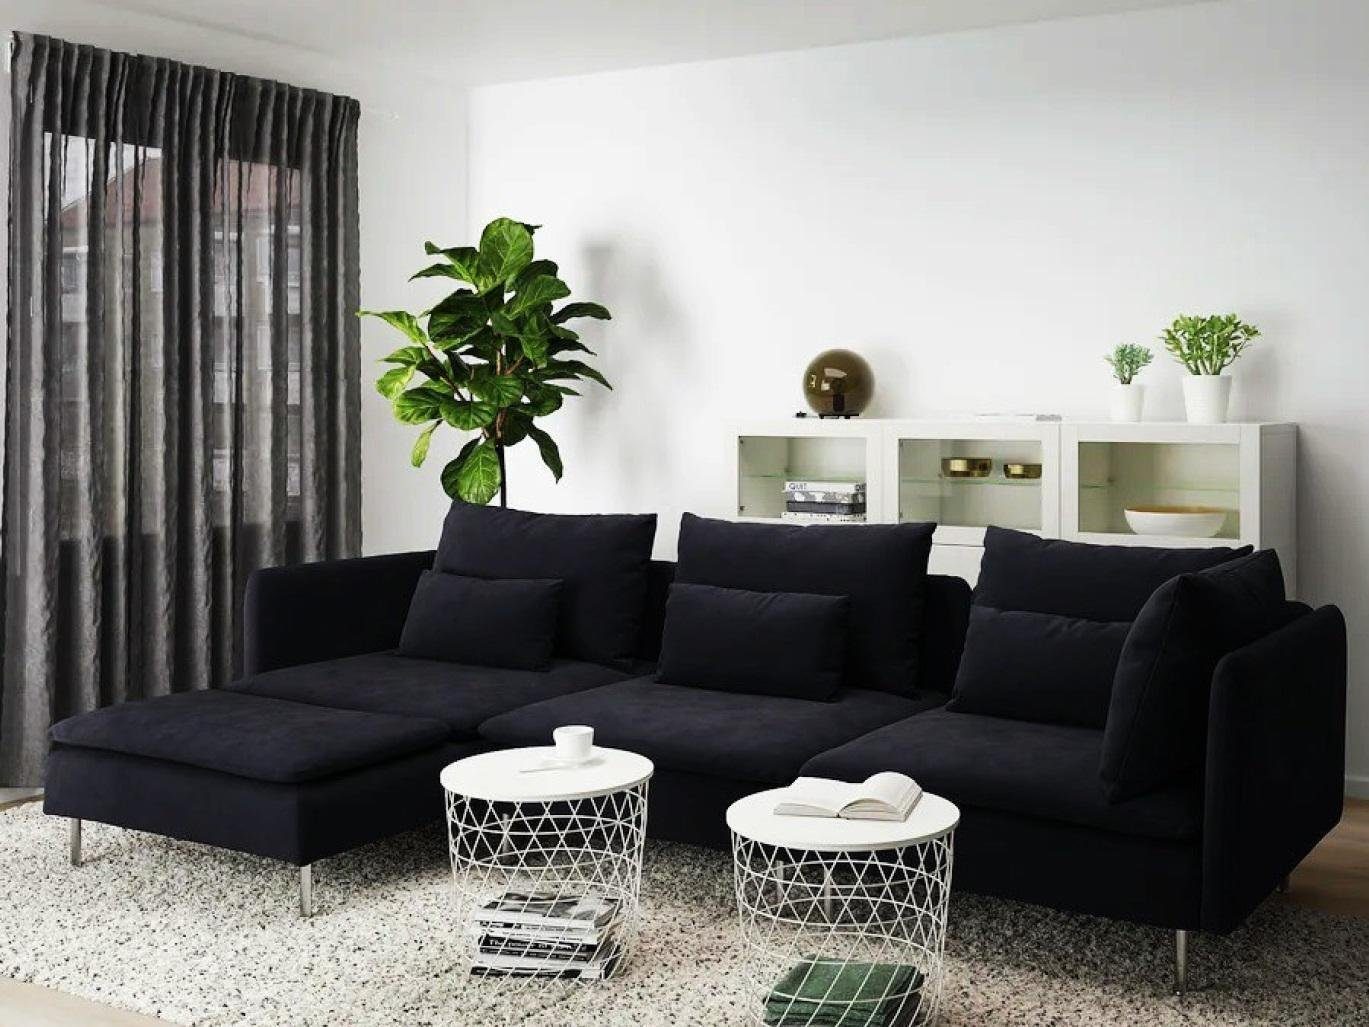 JVmoebel Chaiselongue Luxus Möbel Schwarz Neu Sofa Modern Chaiselongue Textil Design